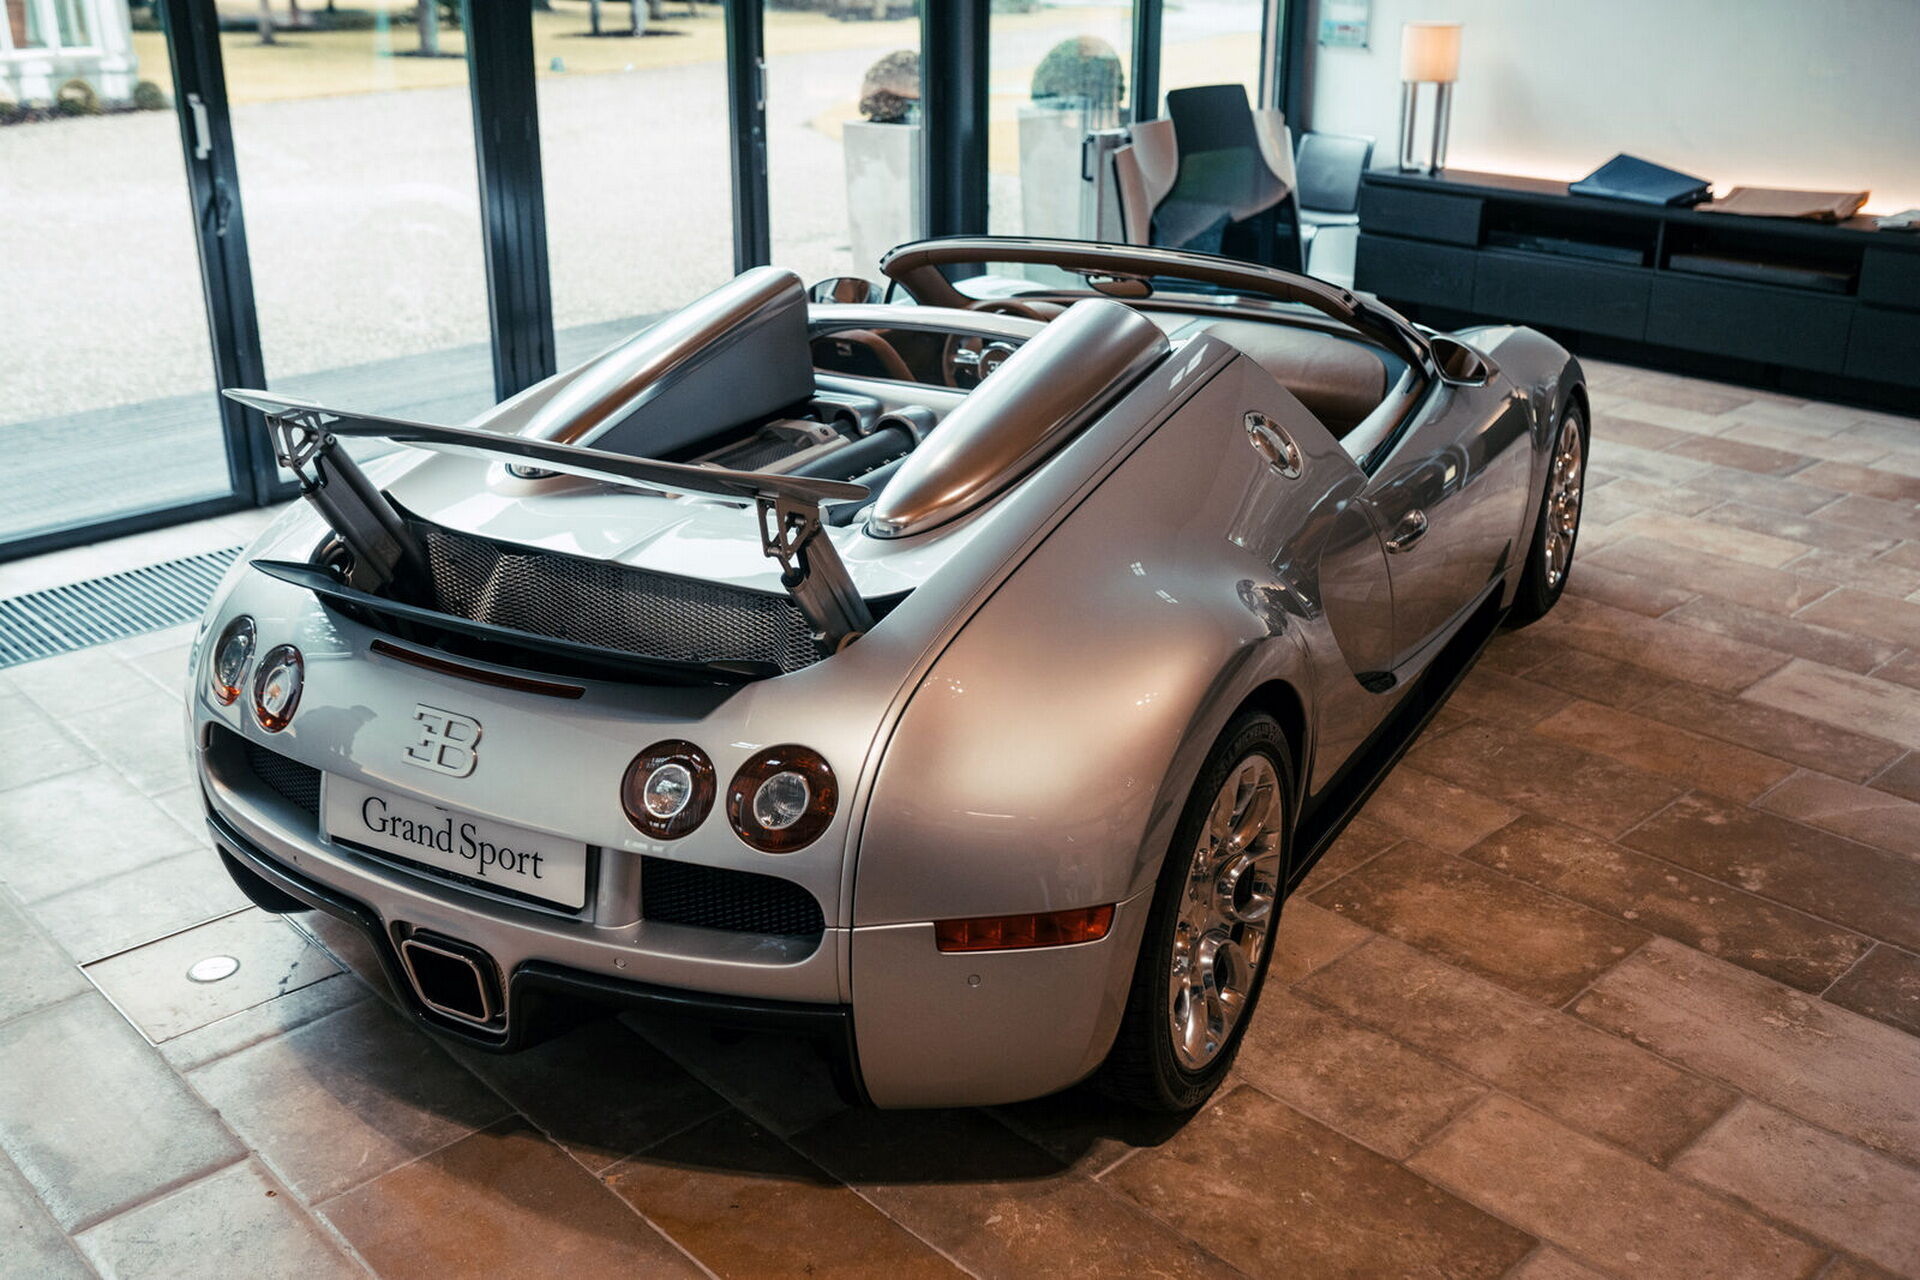 Автомобіль був побудований у 2008 році у якості предсерийного зразка нової моделі Veyron Grand Sport